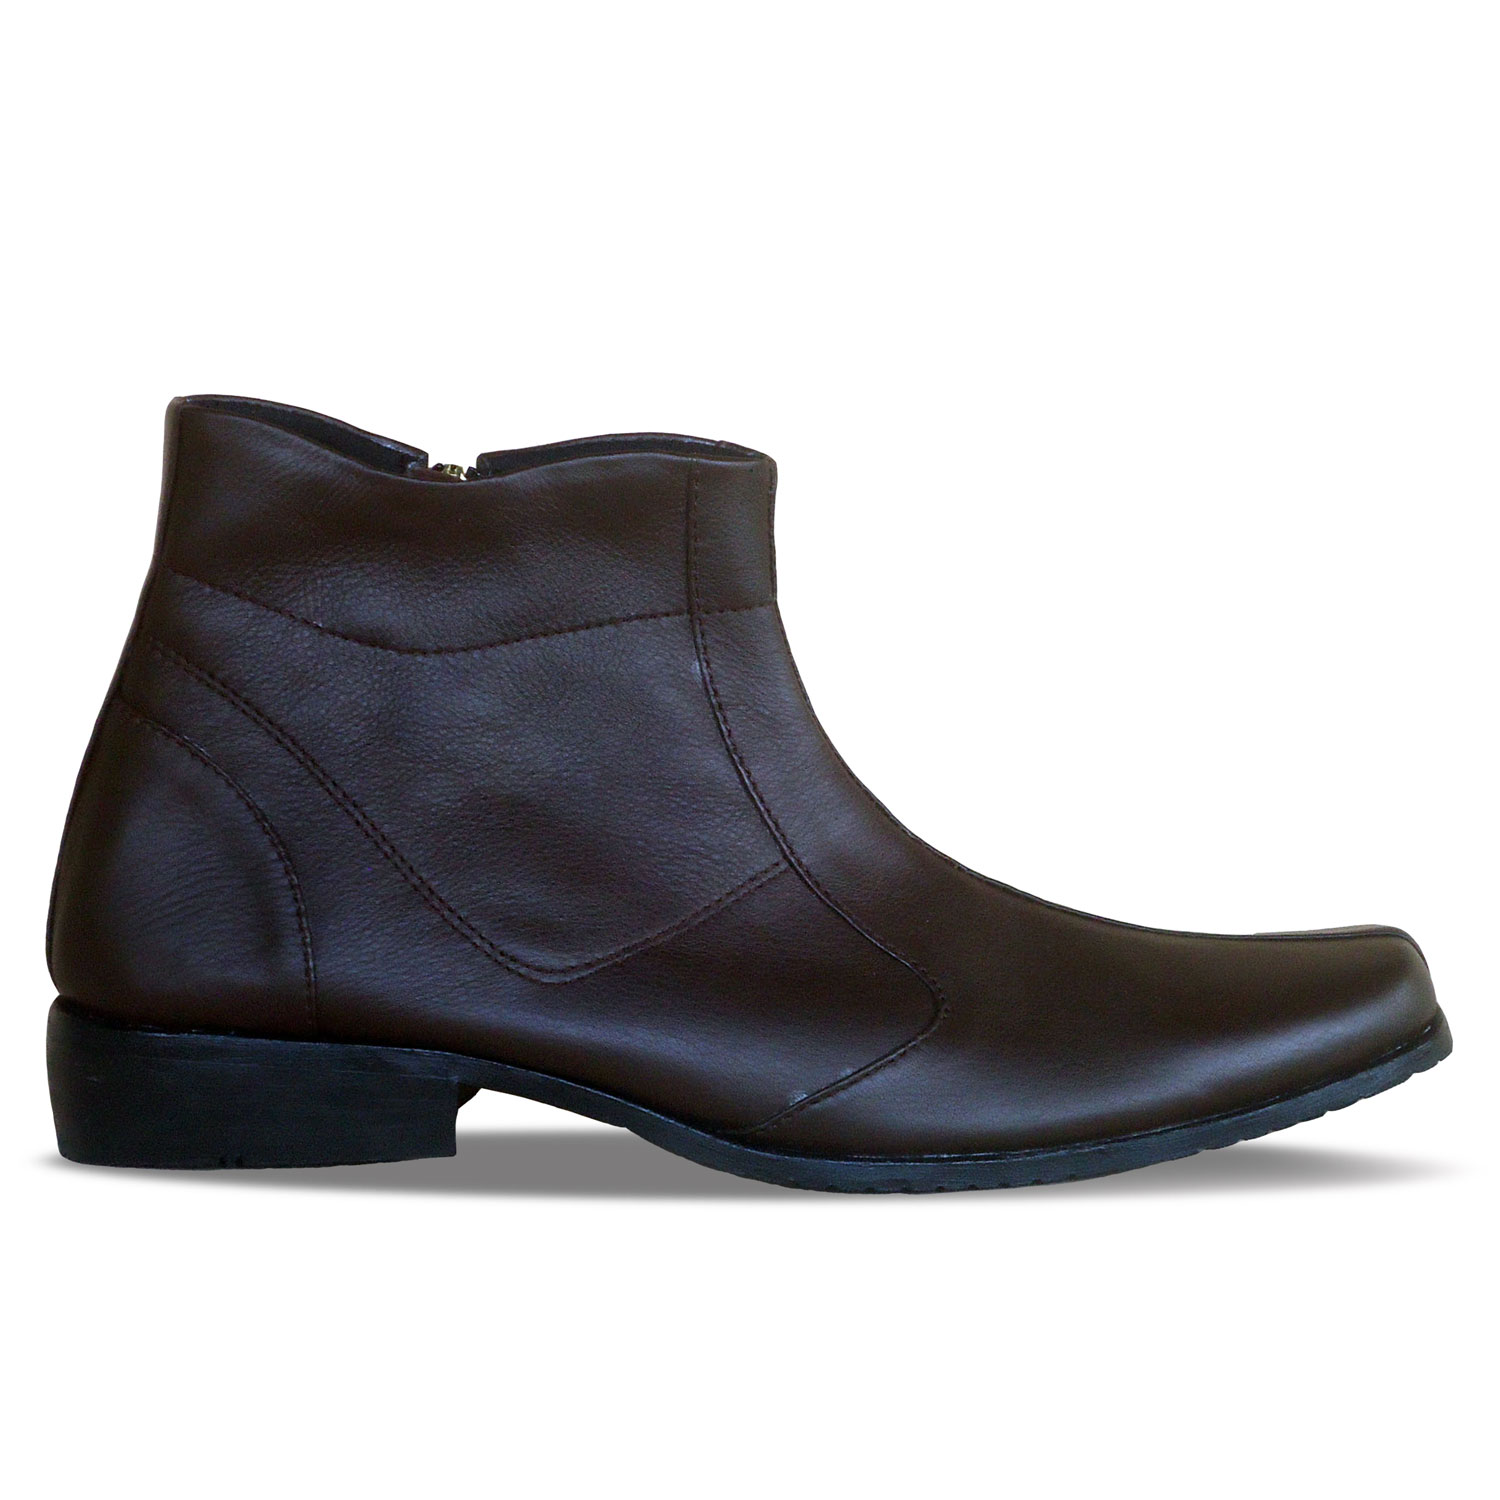 sepatu kulit pria boots formal B14 brown - atmal